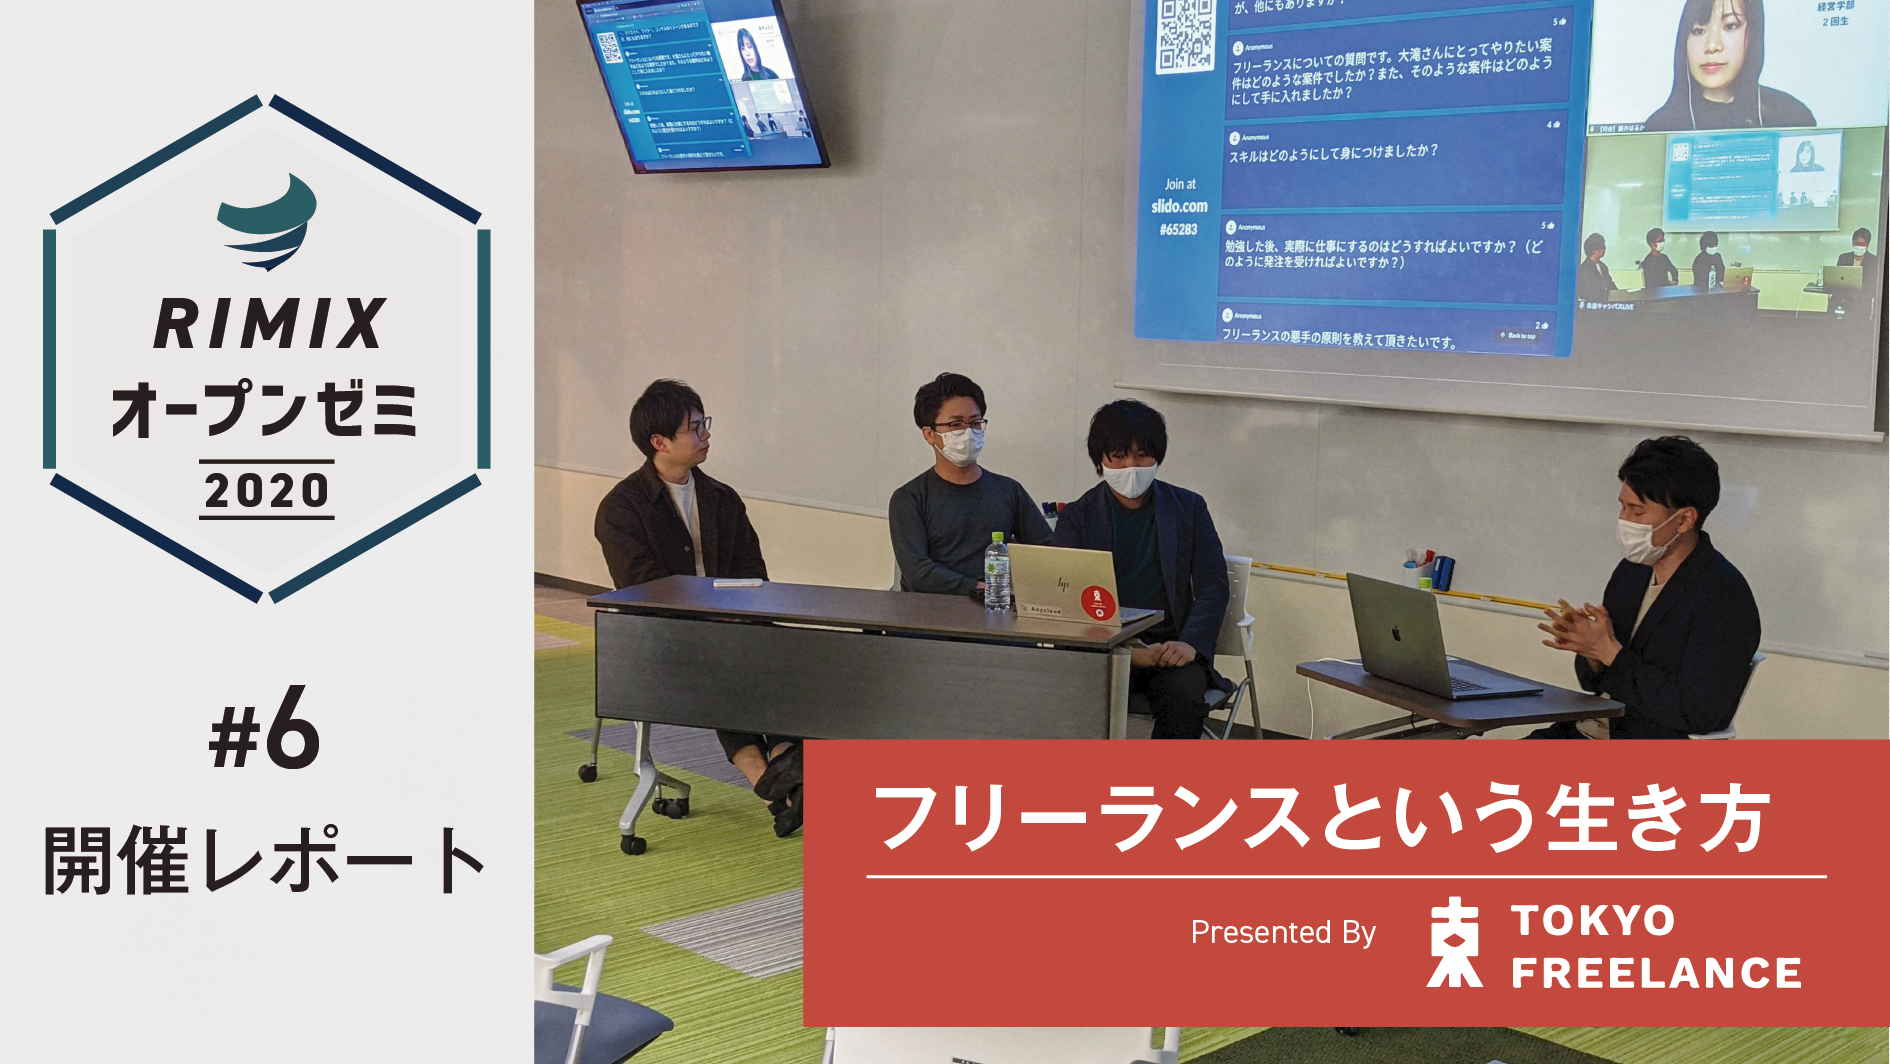 【RIMIXオープンゼミ#6】「フリーランスという生き方」Presented by 東京フリーランス 開催レポート